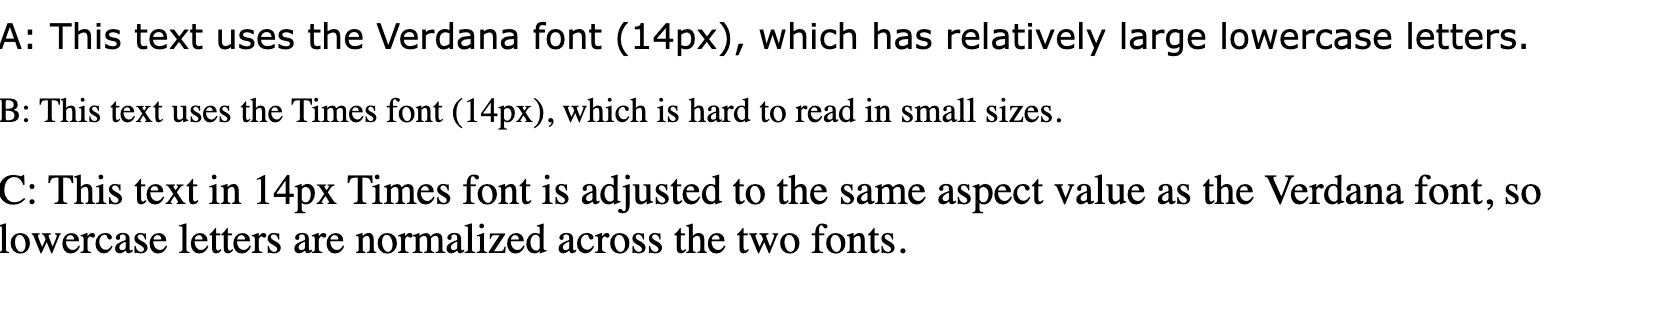 سطور النص المكتوب عليها &quot;هذا النص يستخدم خط verdana (14 بكسل)، الذي يحتوي على أحرف صغيرة كبيرة نسبيًا&quot;، &quot;هذا يستخدم خط Times (14 بكسل)، الذي تصعب قراءته بأحجام صغيرة&quot; و&quot;يتم تعديل هذا النص بخط 14 بكسل Times إلى نفس قيمة العرض مثل خط Verdana، لذا تتم تسوية الخطوط الصغيرة عبر الخطين